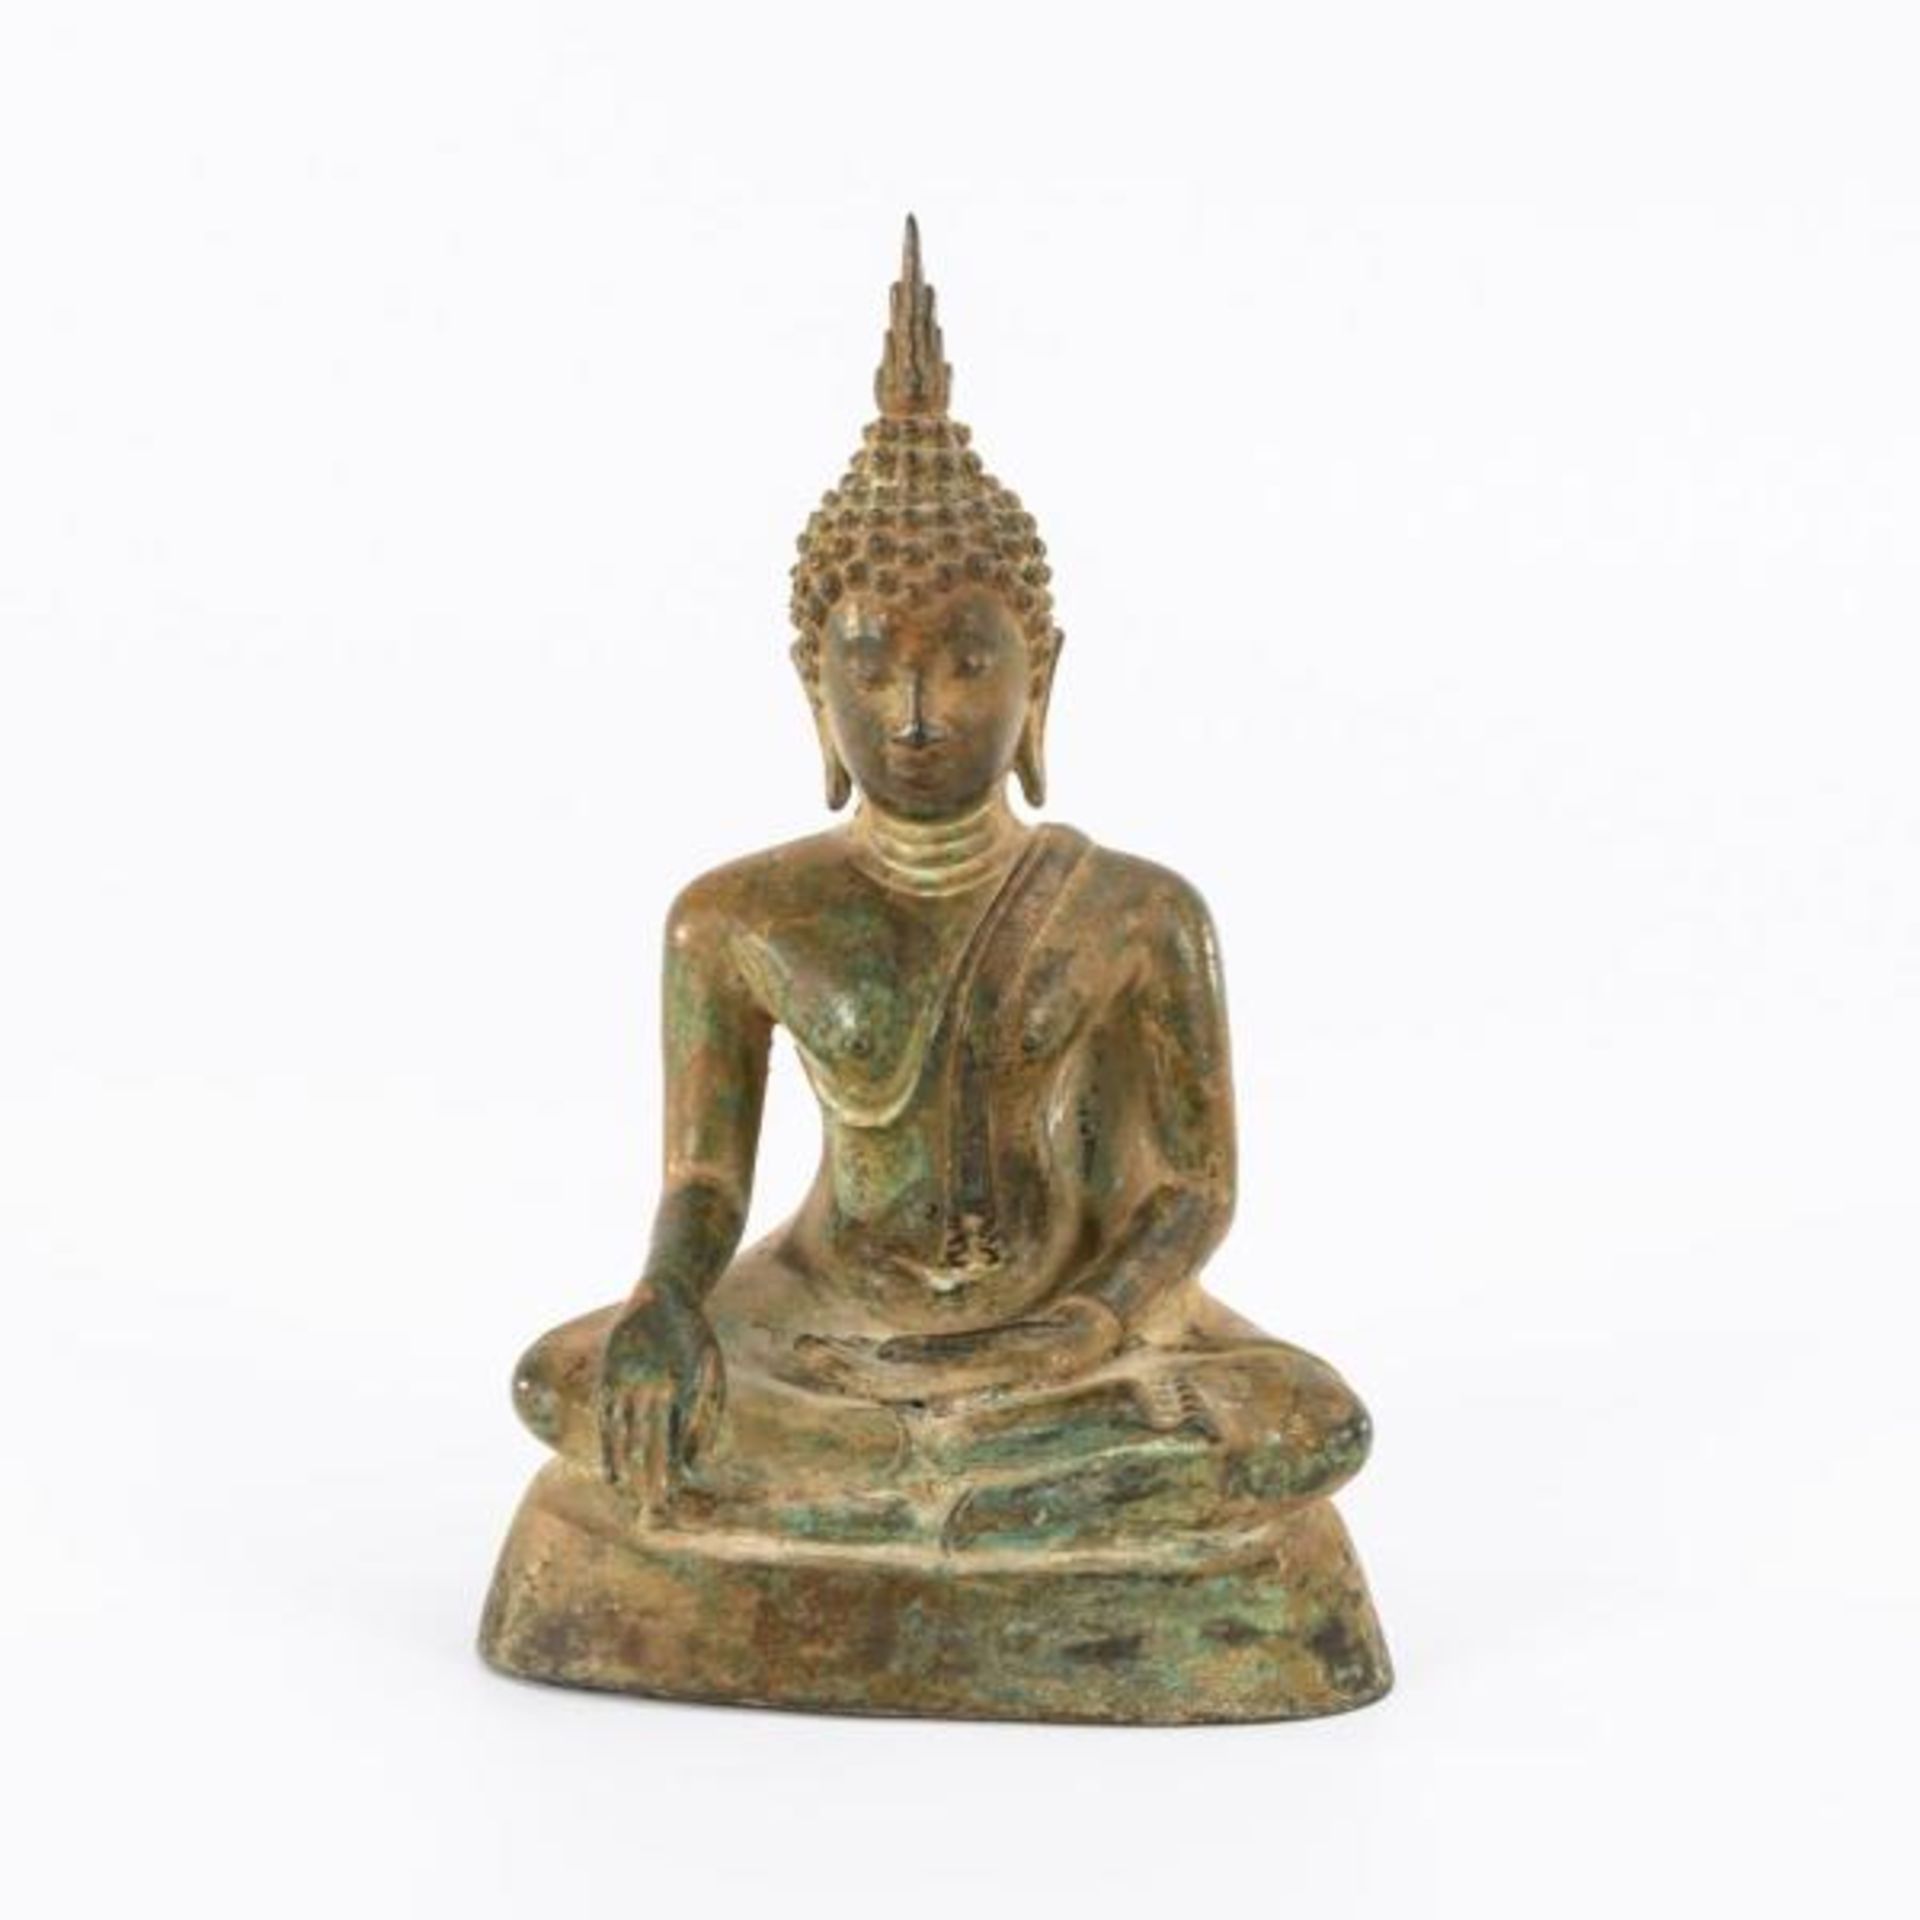 Buddha mit Gestus der Erdberührung